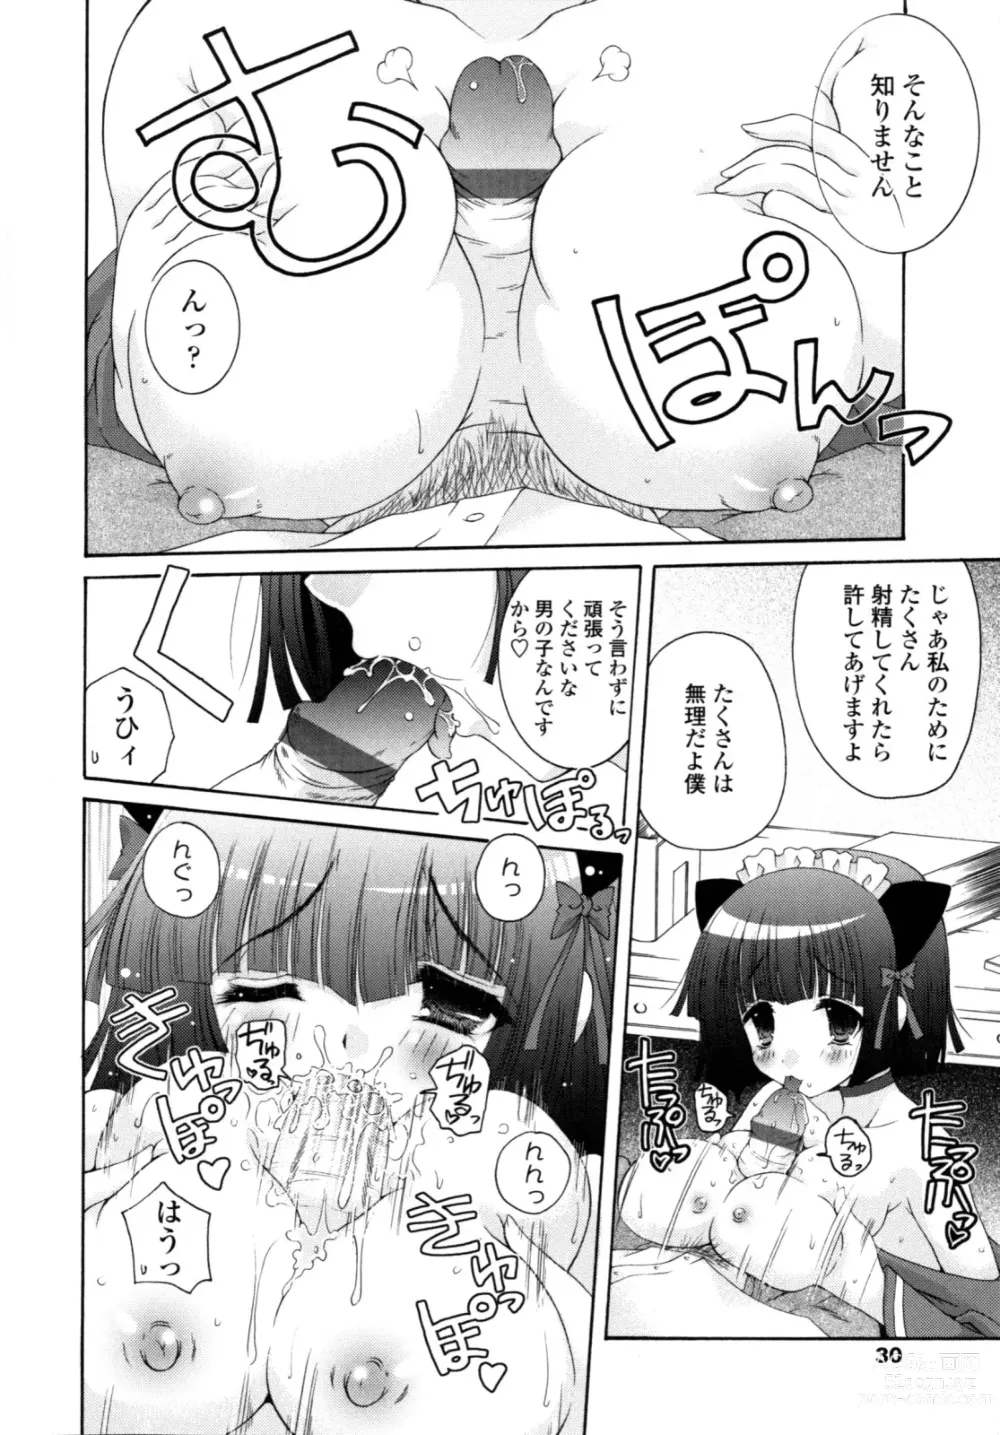 Page 29 of manga Yawaraka Peach